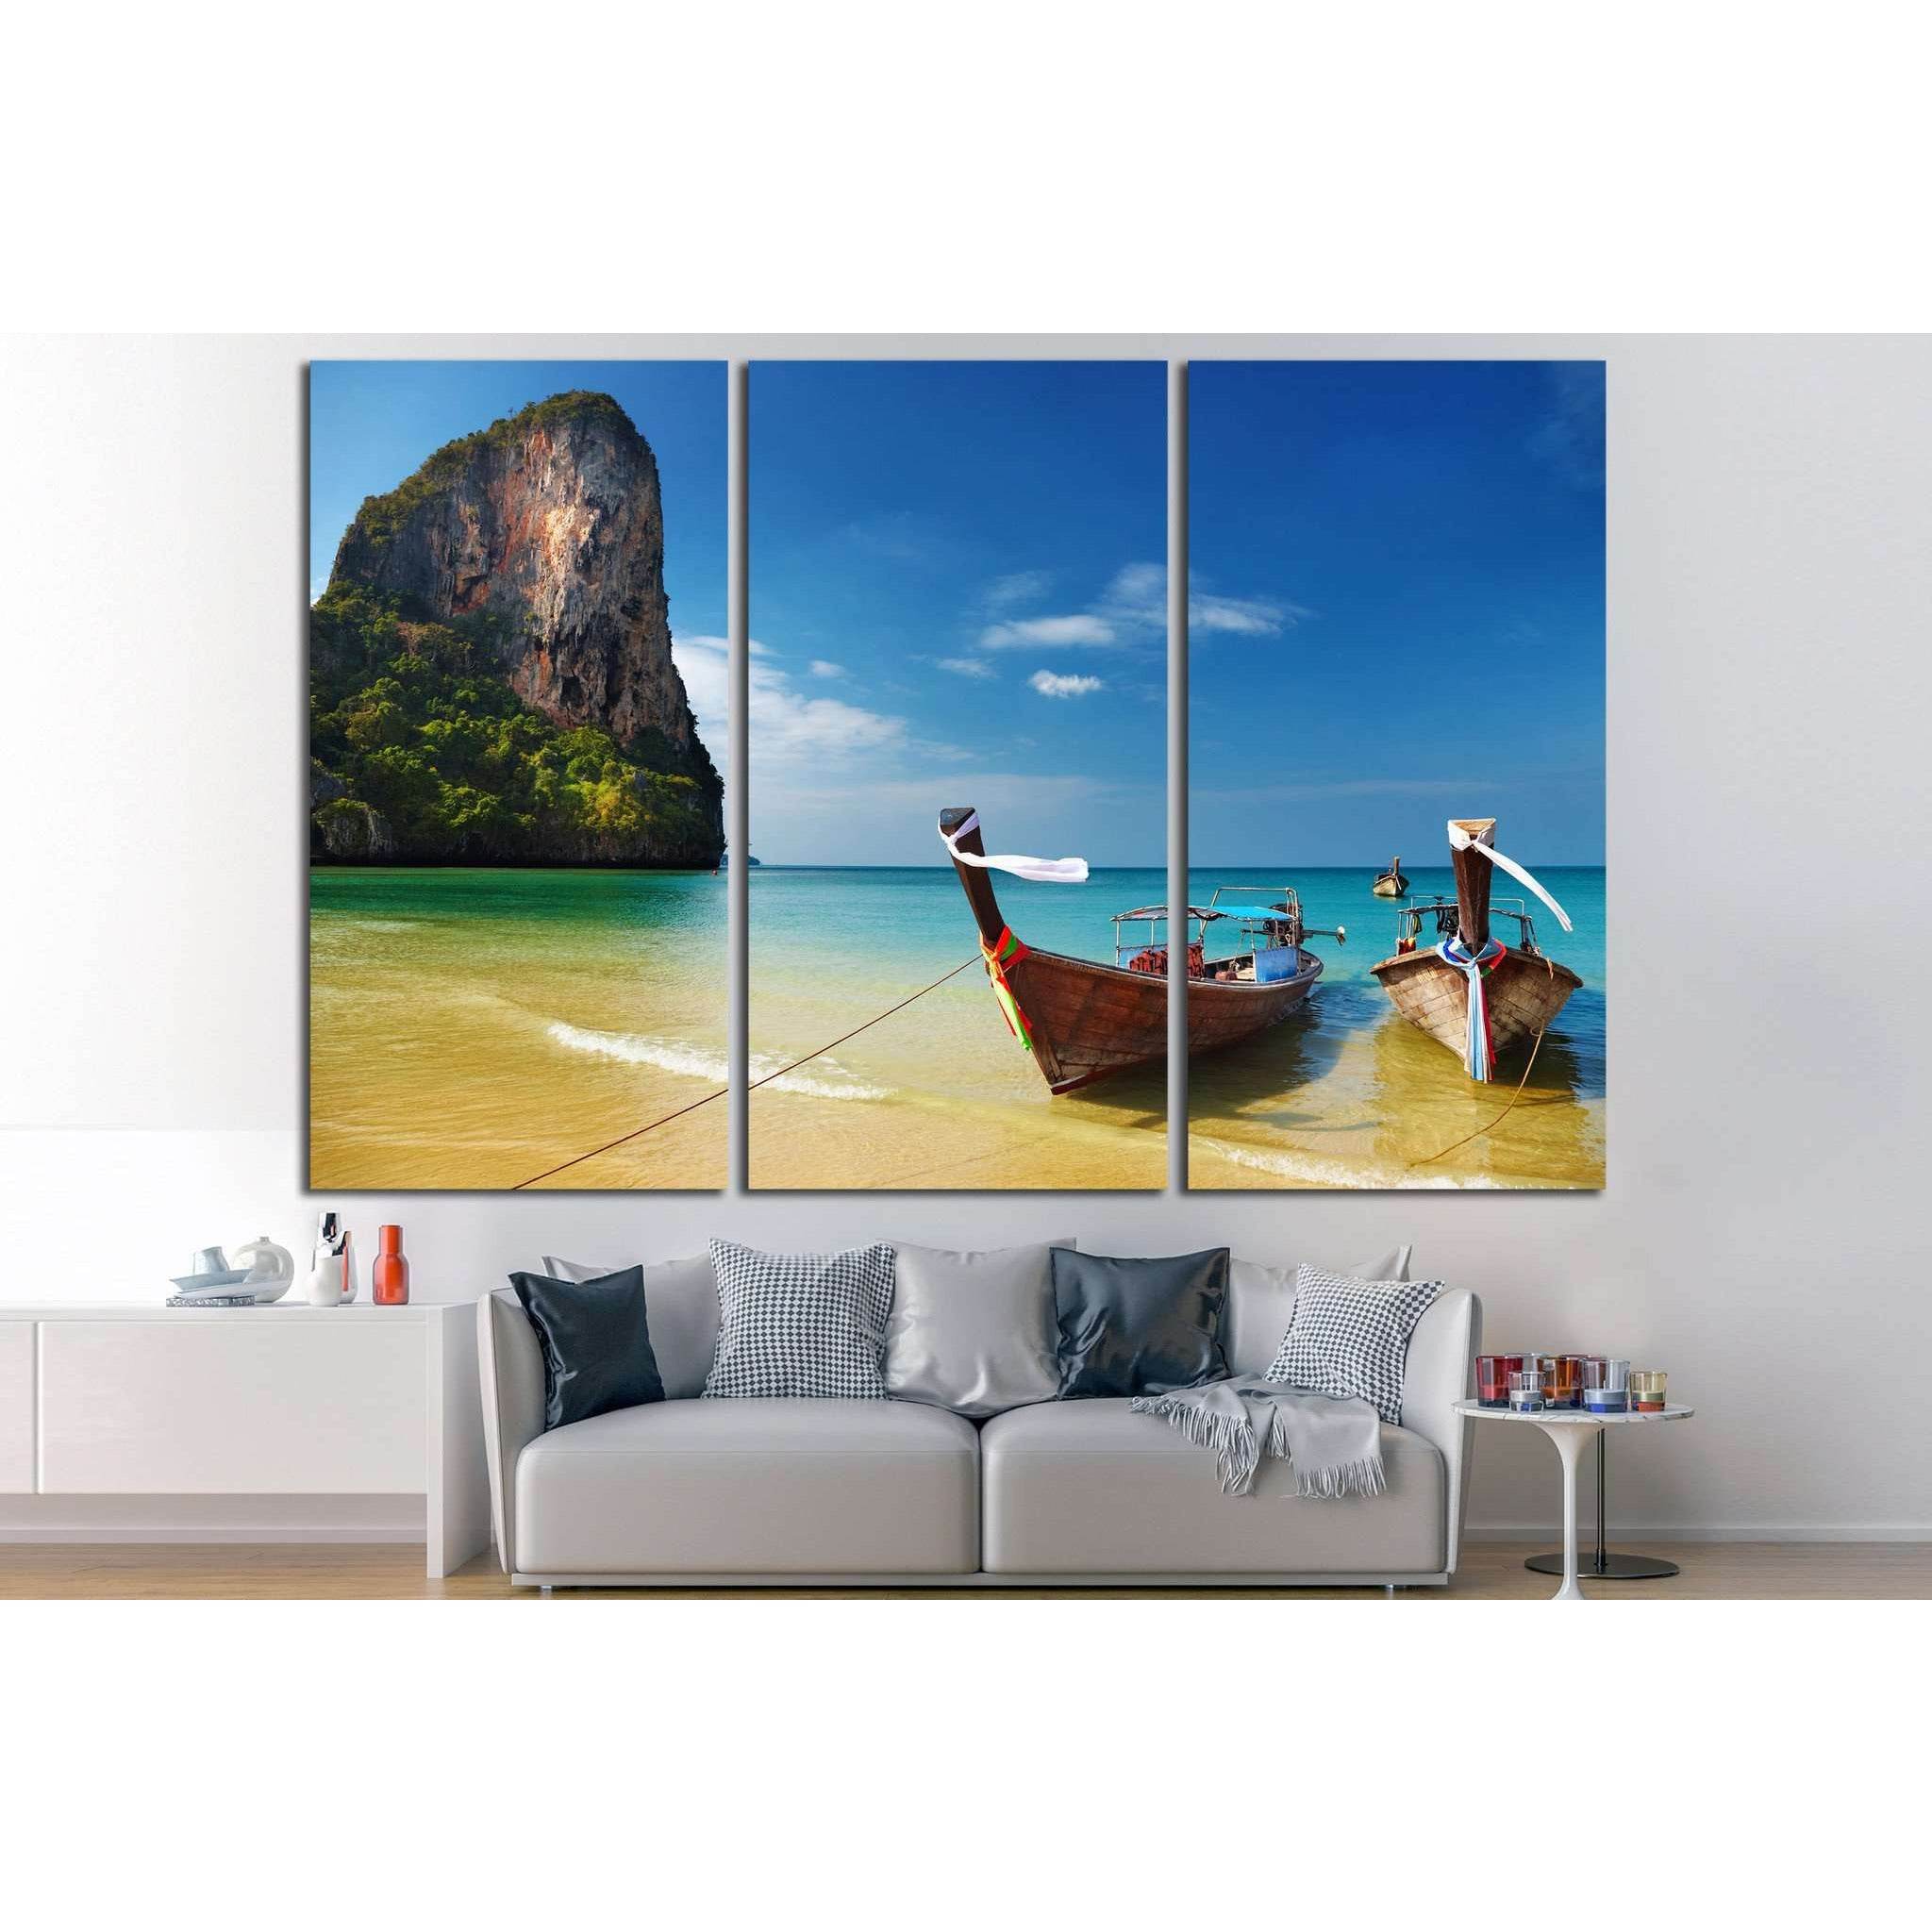 Andaman Sea, Thailand №643 Ready to Hang Canvas Print